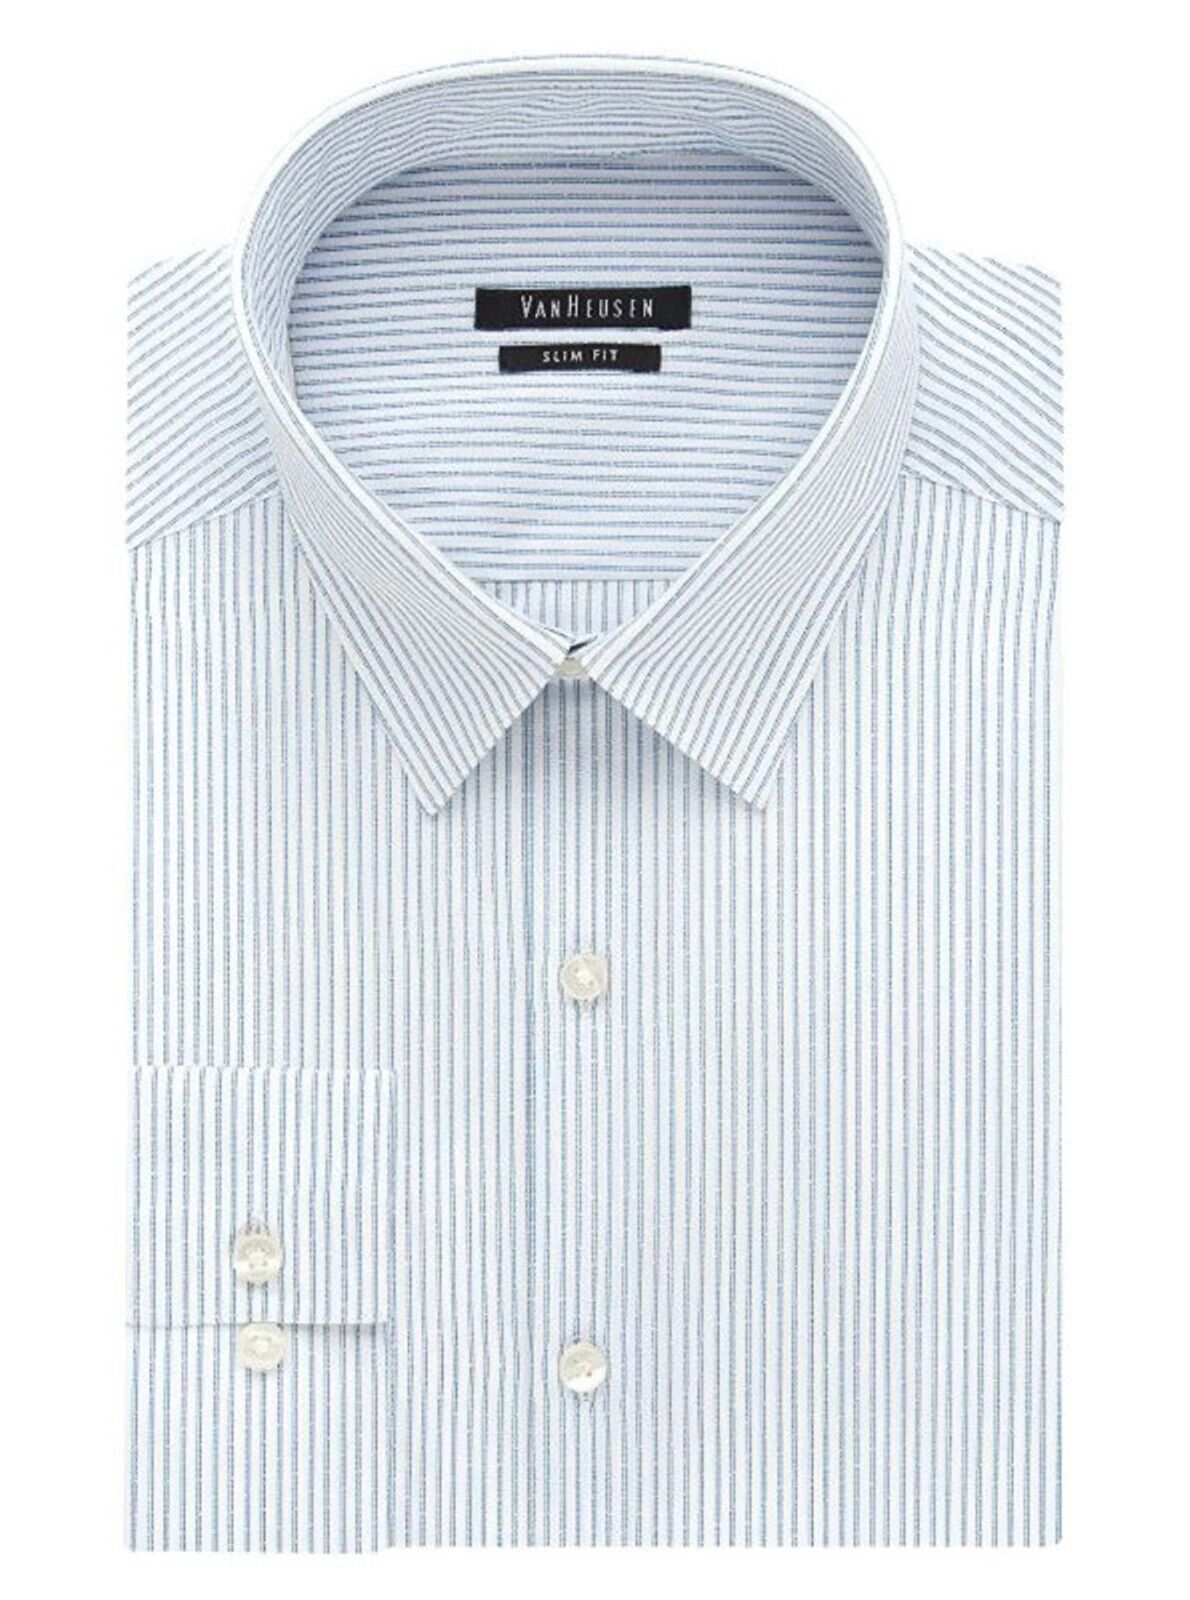 Van Heusen Men's Slim-Fit Wrinkle Free Dress Shirt Long Sleeves Blue Stripe Nwt